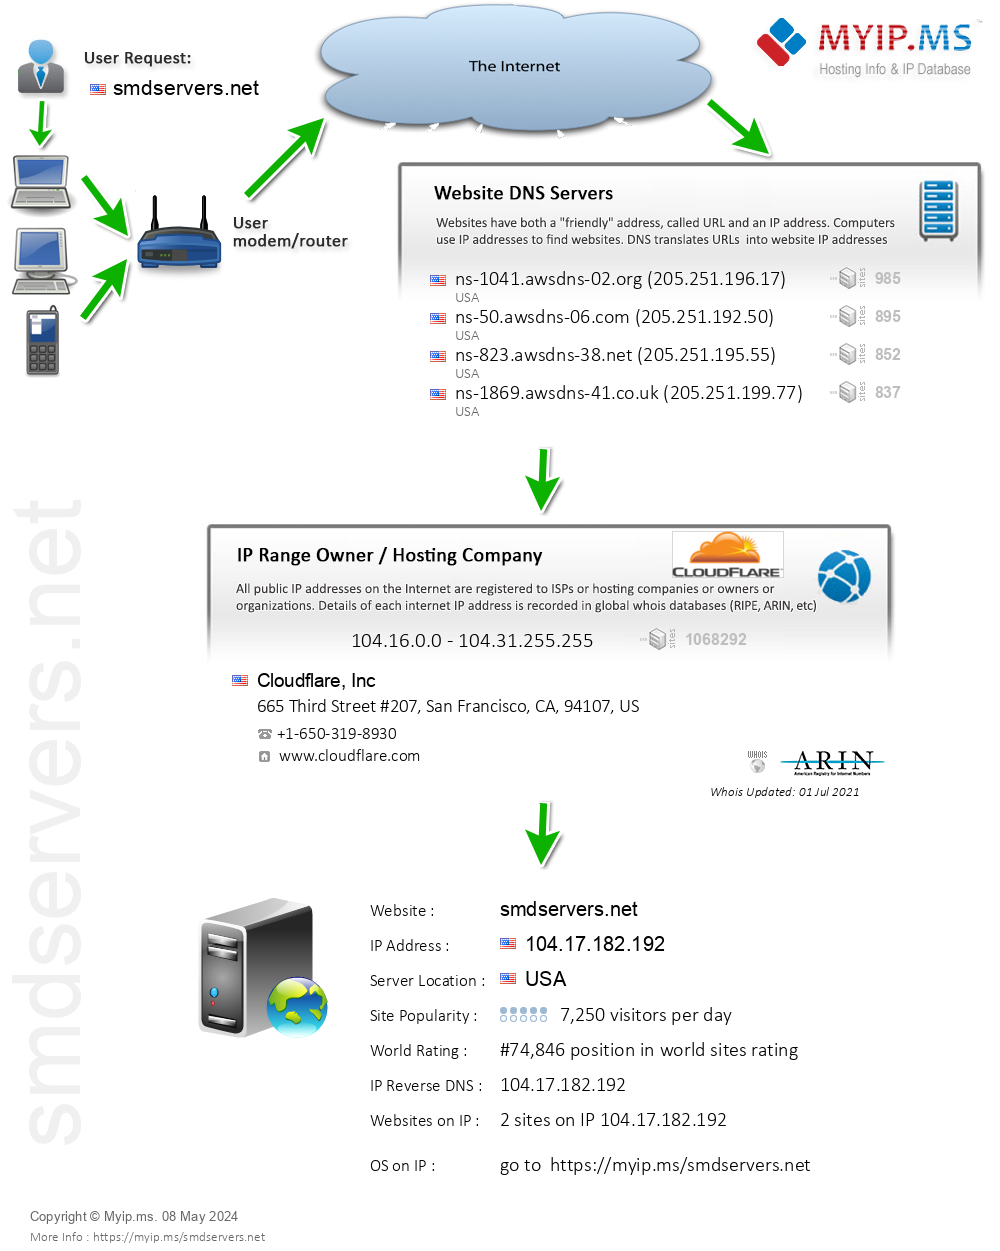 Smdservers.net - Website Hosting Visual IP Diagram